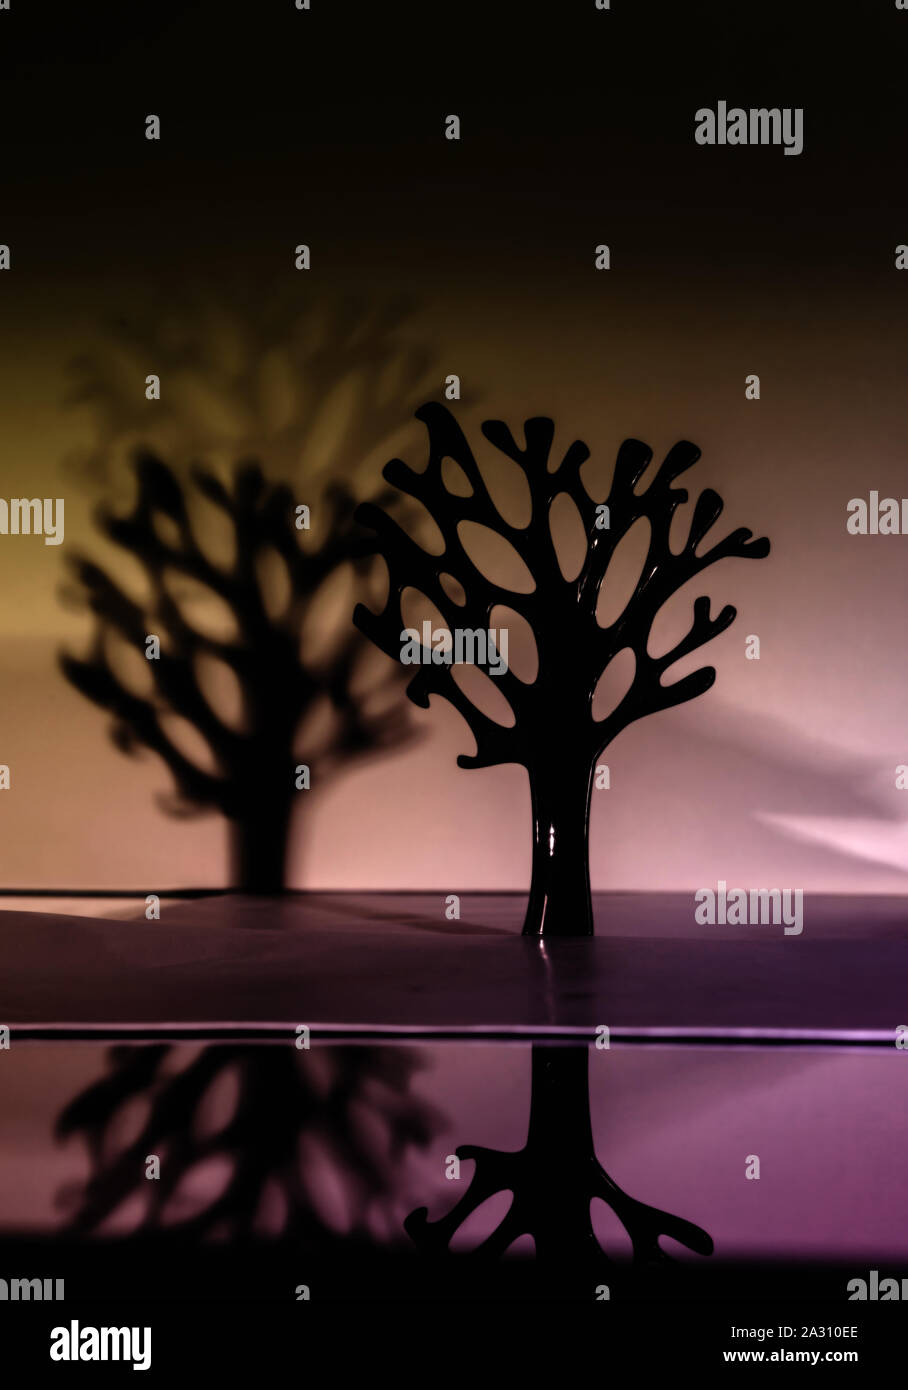 Schwarzer Baum mit Reflexion im Wasser und Schatten im Hintergrund. Konzeptionelle Bild für ein Buch geeignet. Stockfoto